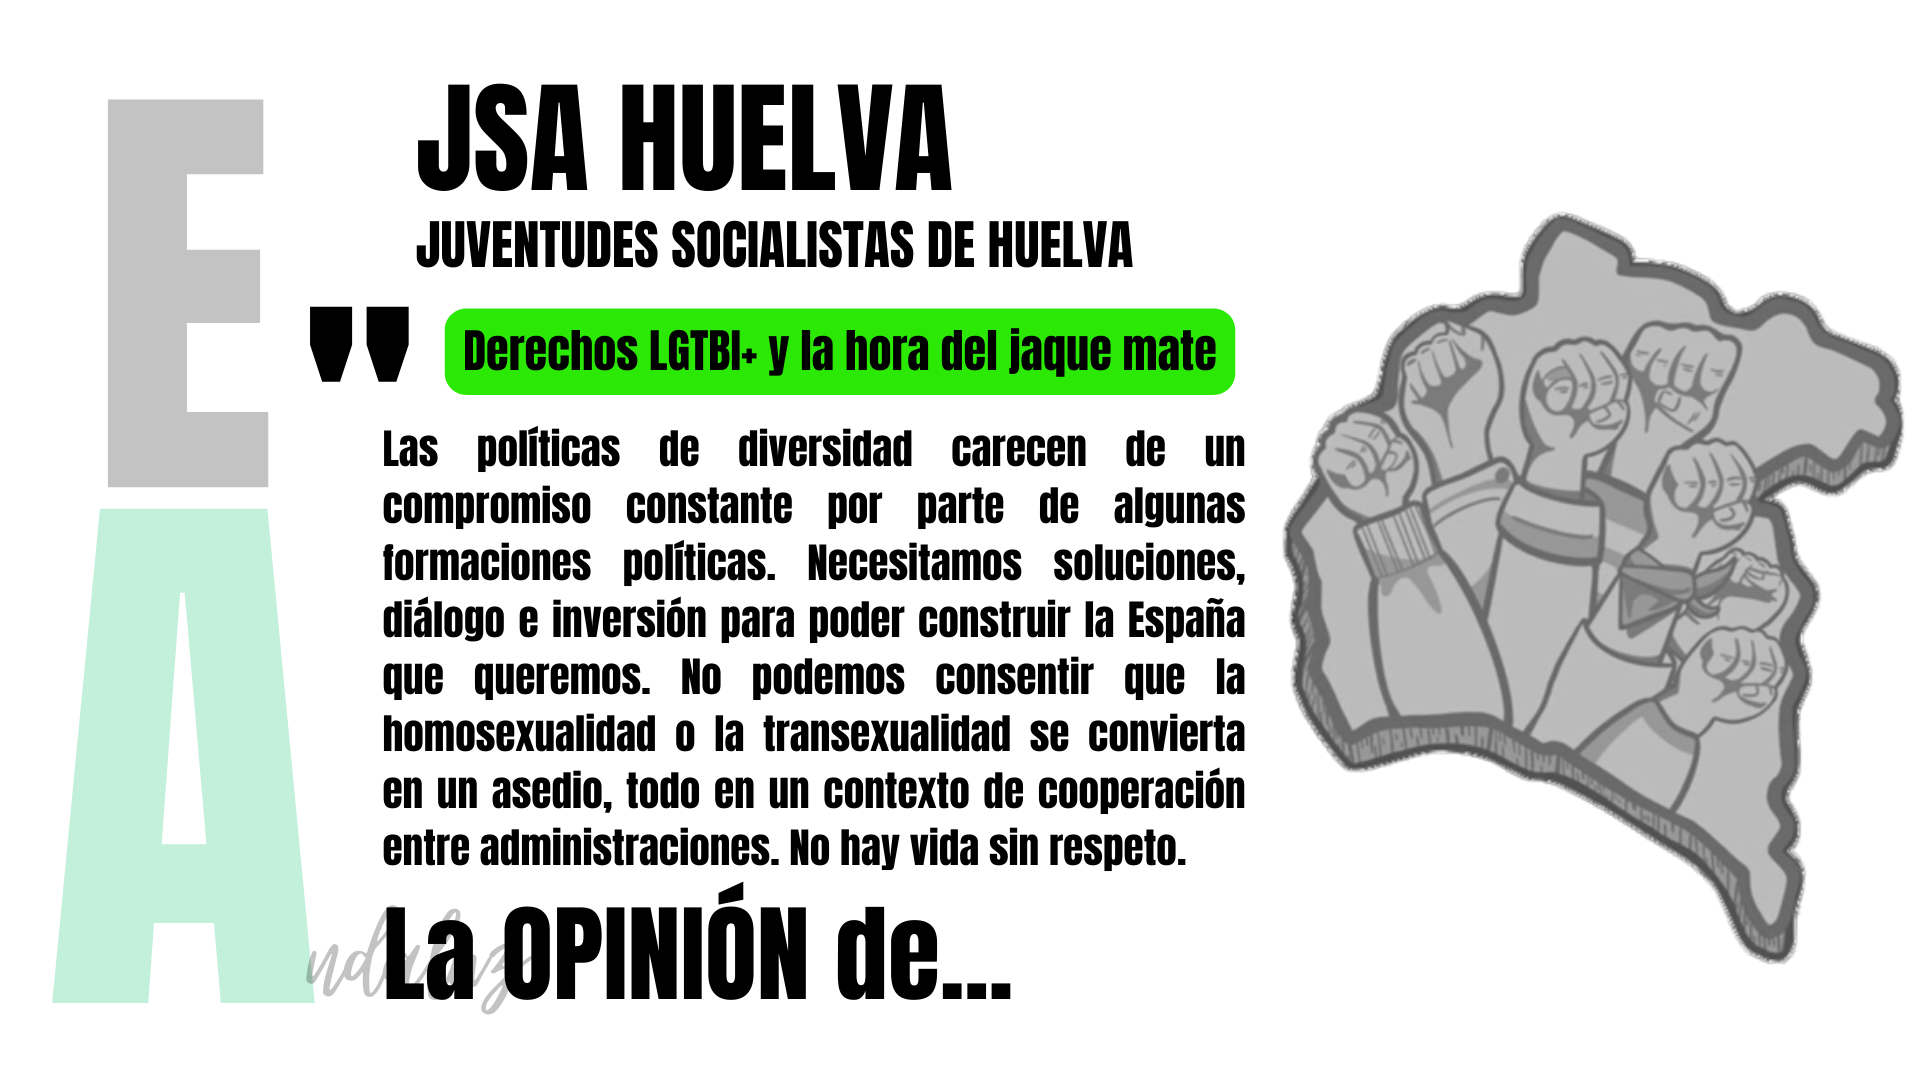 Artículo de opinión de JSA Huelva: "Derechos LGTBI+ y la hora del jaque mate".